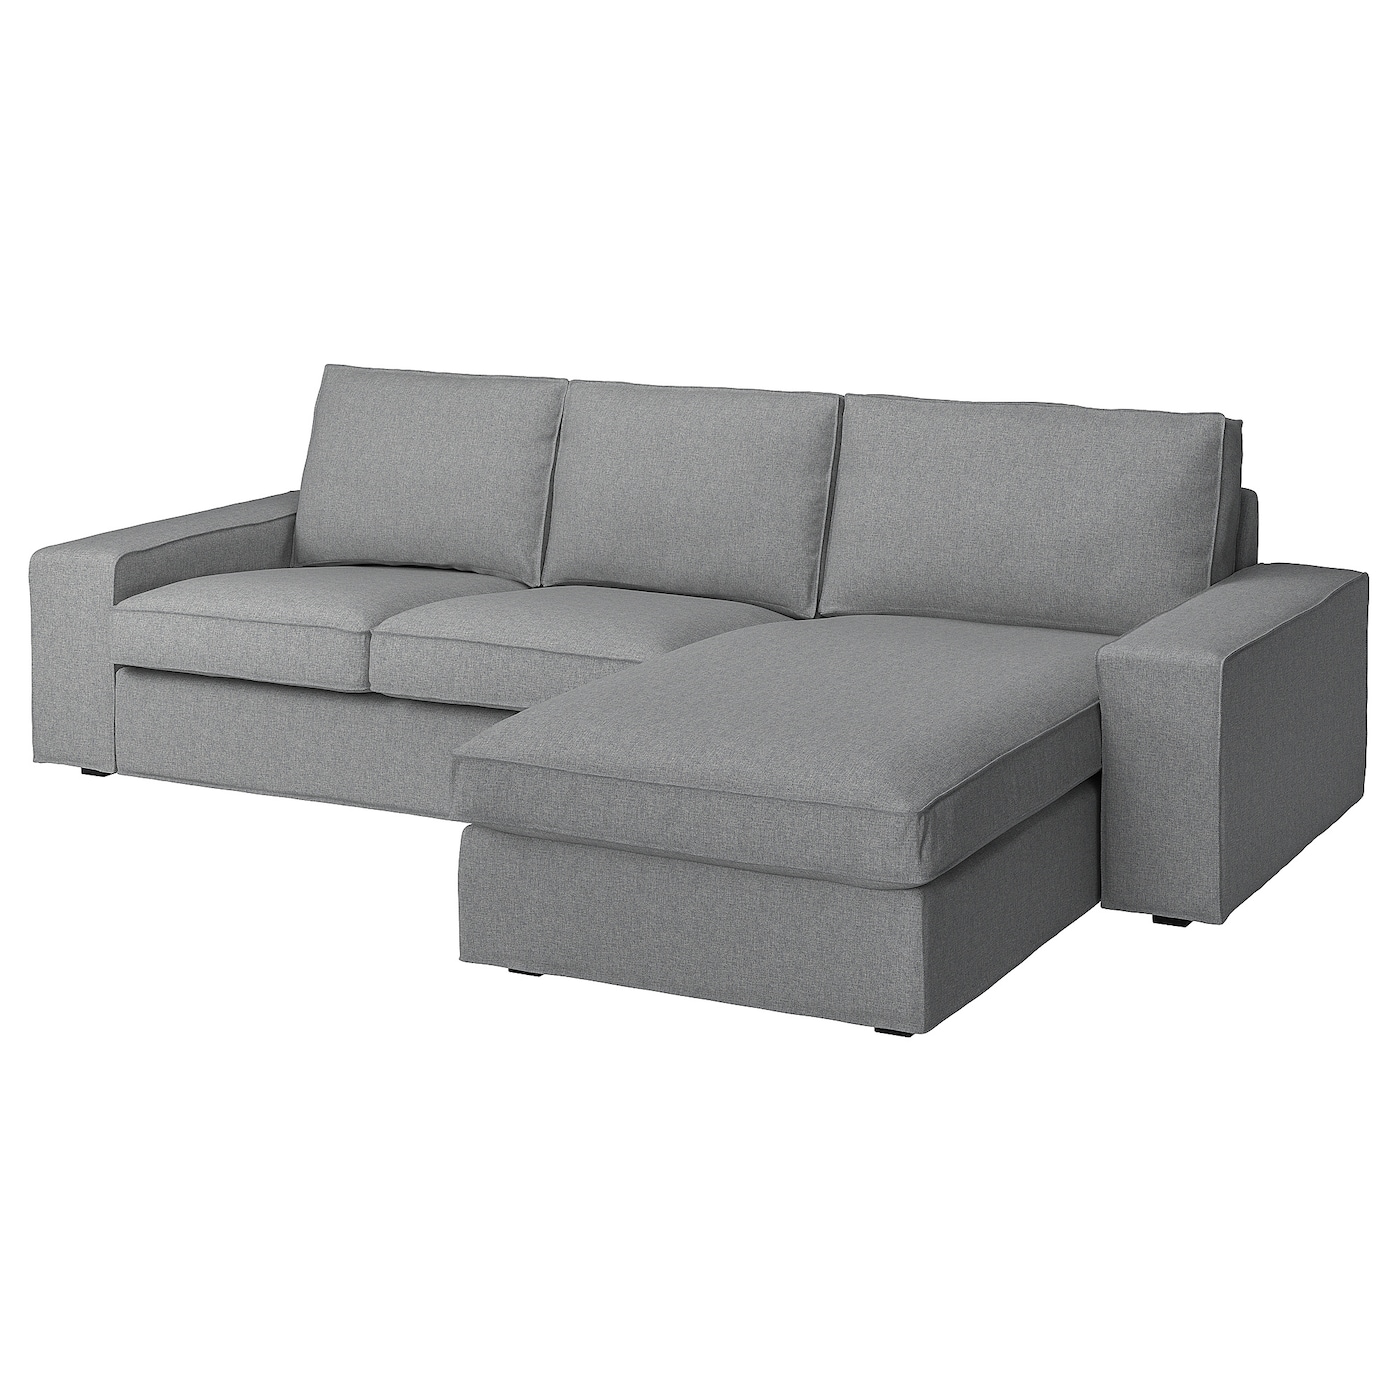 КИВИК 3-местный диван + диван, Тибблби бежевый/серый KIVIK IKEA